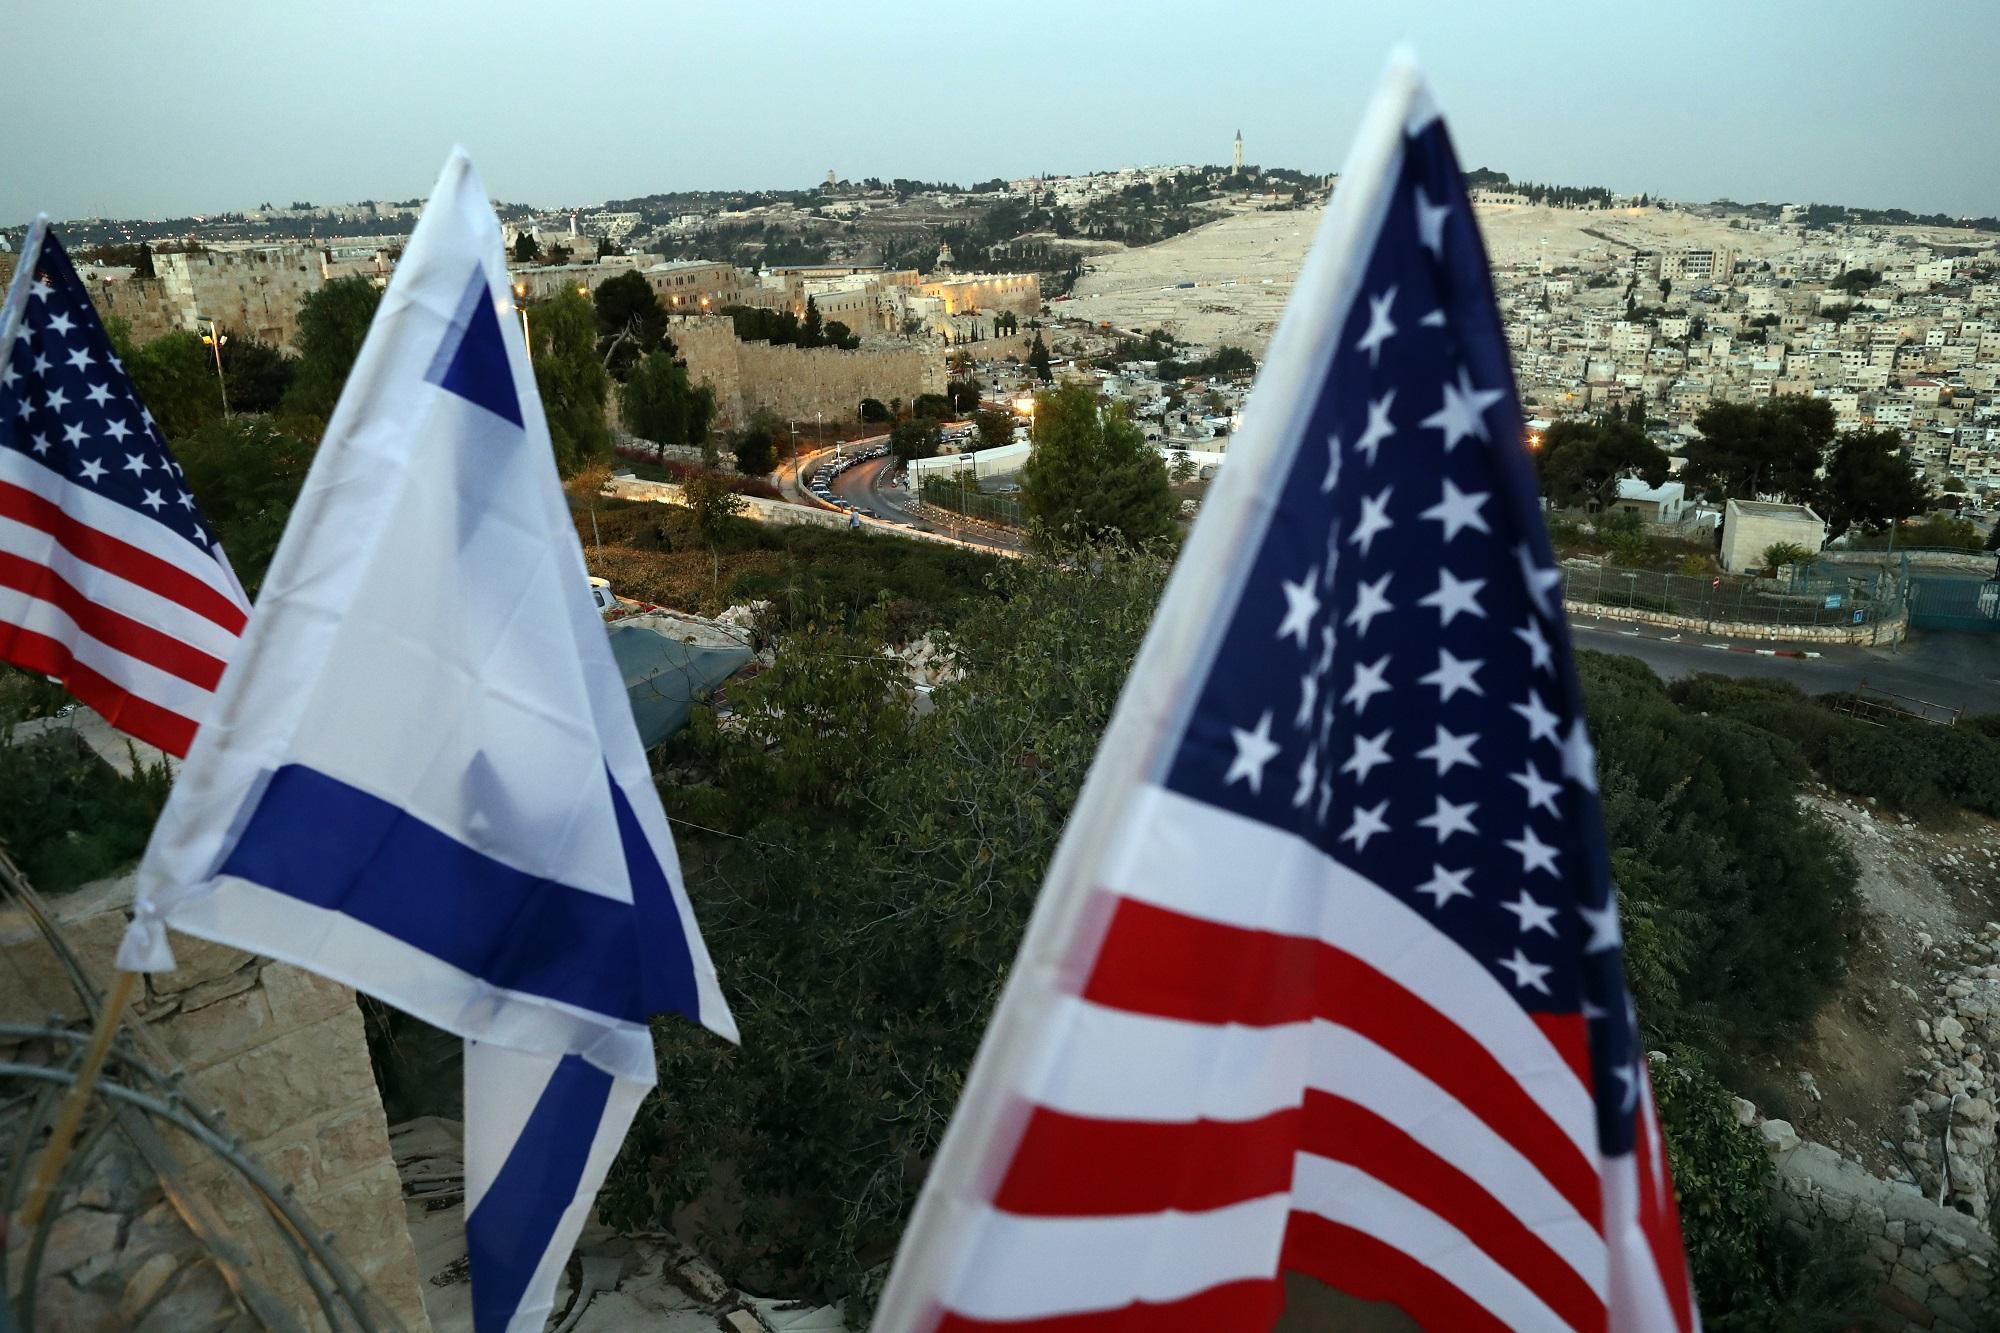 Las banderas de Israel y Estados Unidos ondean en una vivienda de uno de los asentamientos judíos en Jerusalén Este, declarados ilegales en diciembre pasado tras una resolución del Consejo de Seguridad de Naciones Unidas. Foto Thomas Coex (AFP).